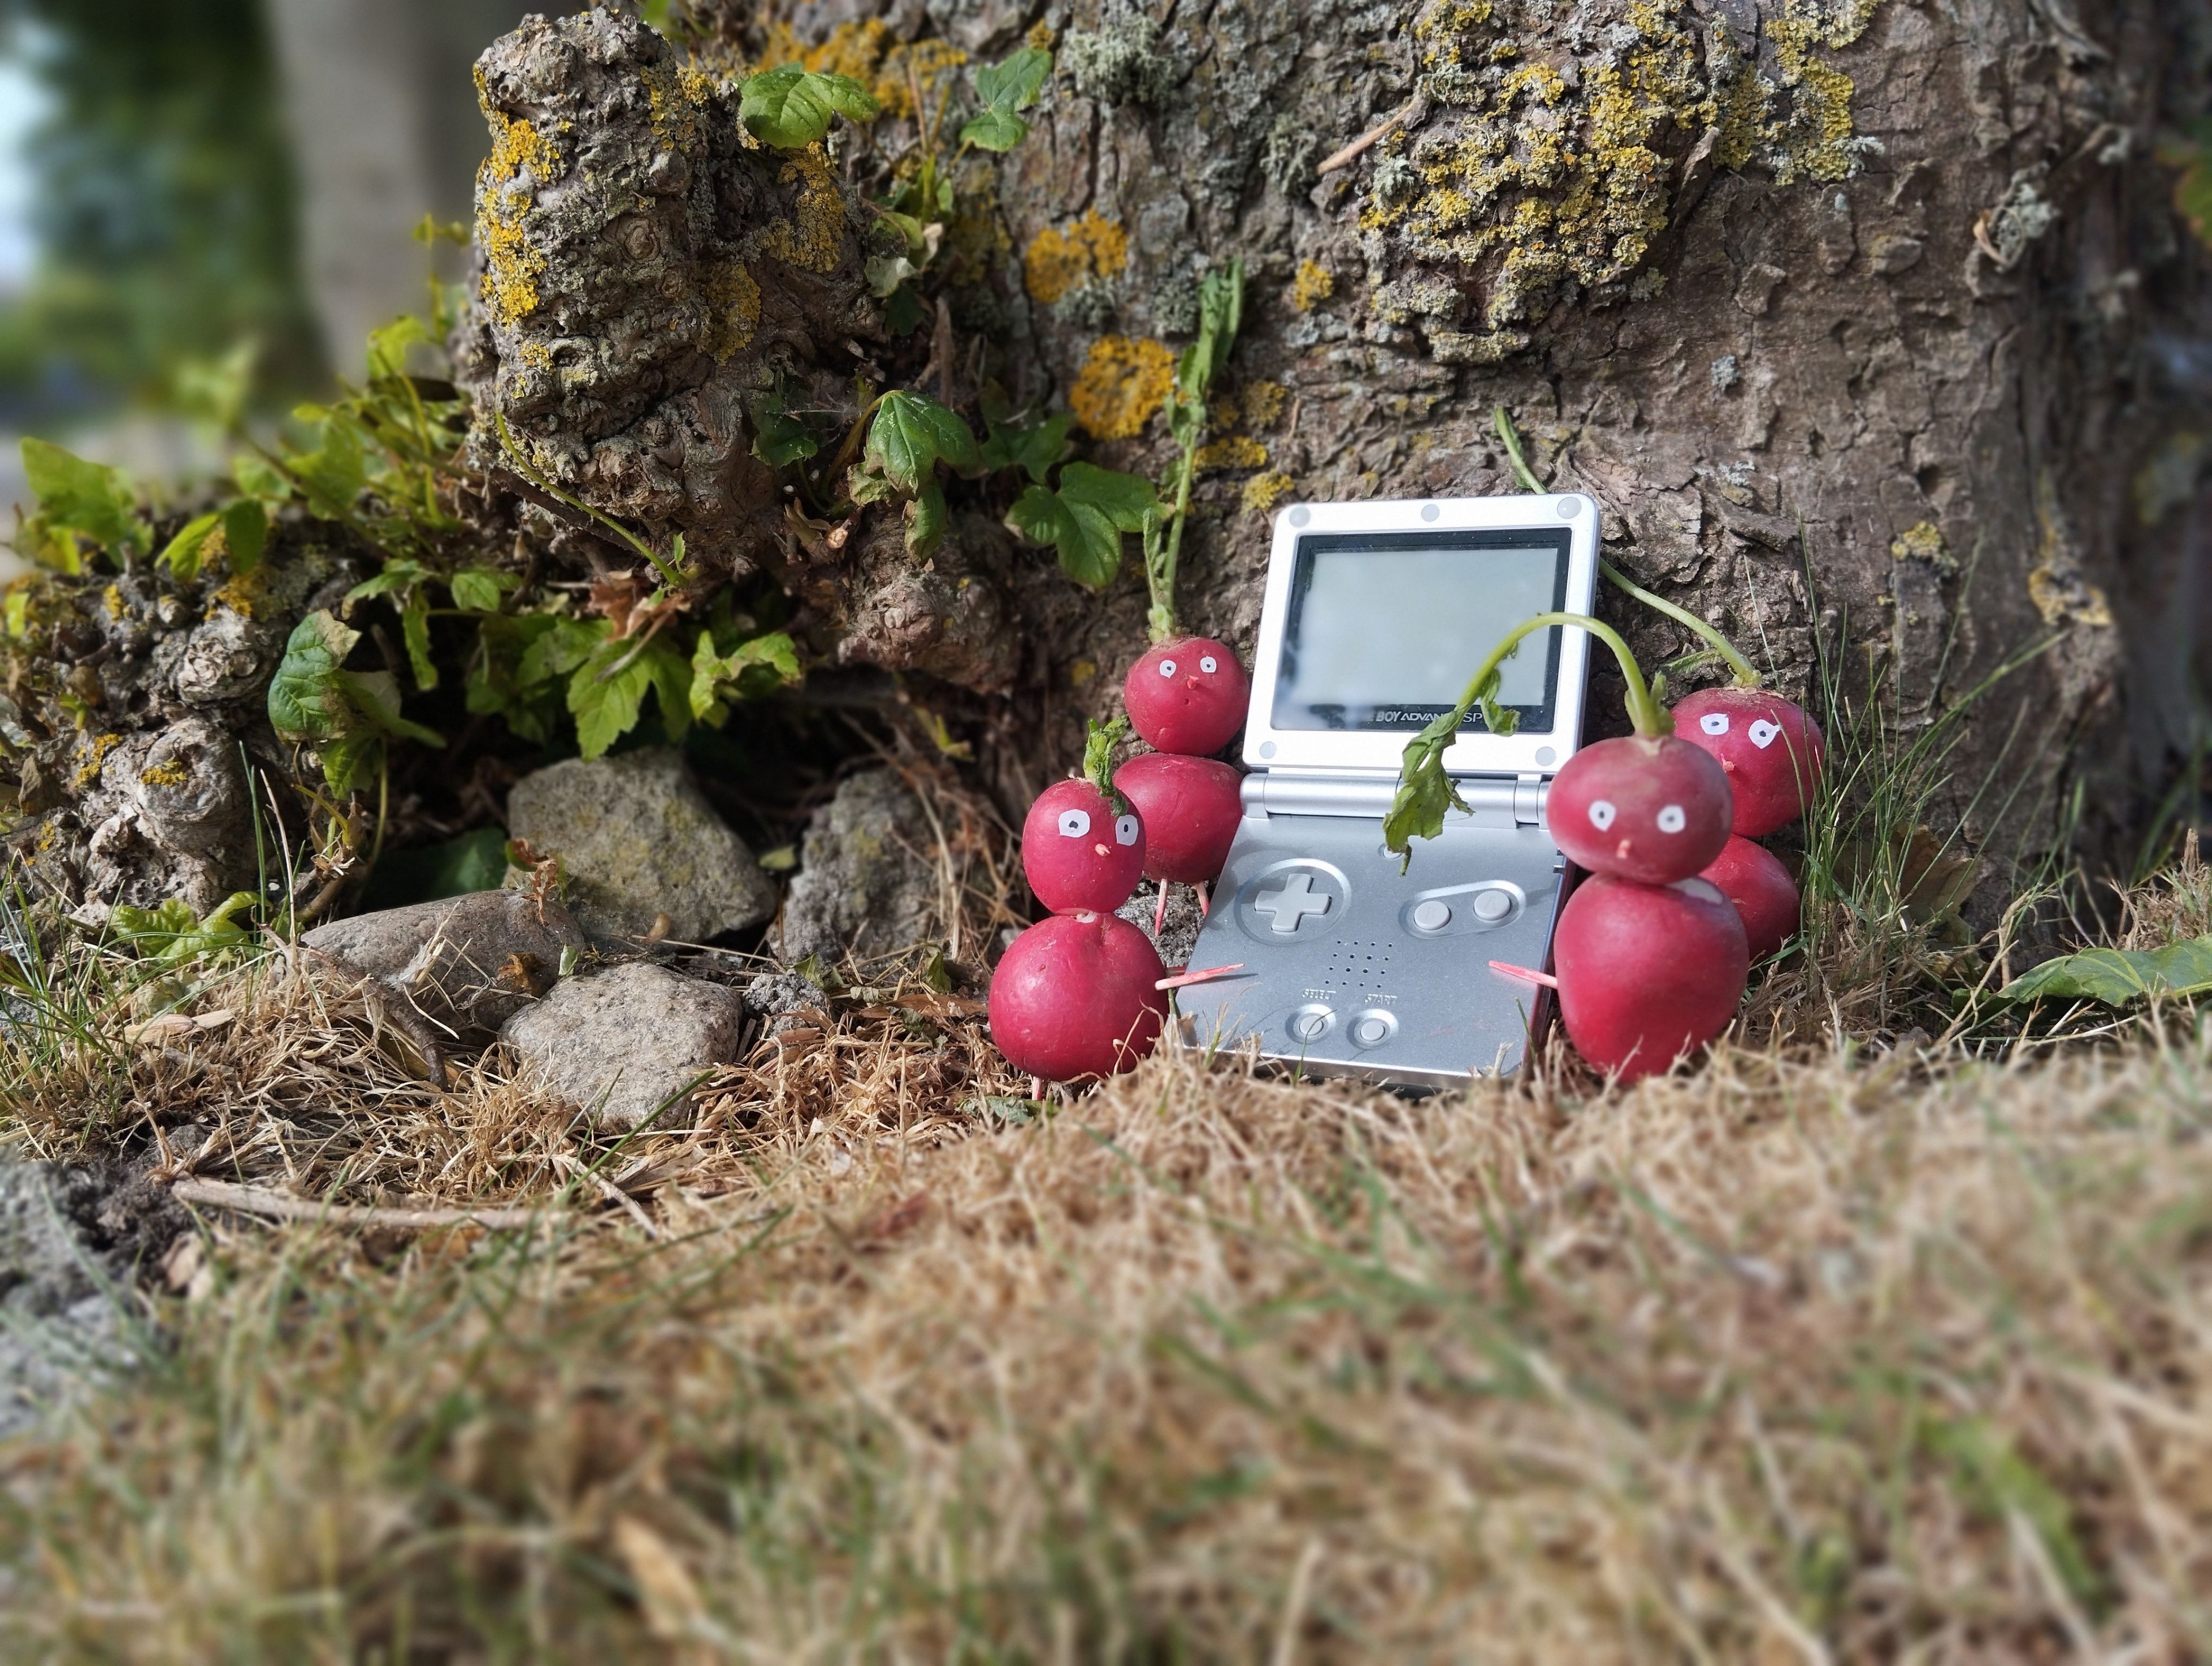 In freier Wildbahn haben die Radieschen-Pikmin einen wertvollen Game Boy Advance SP gefunden.